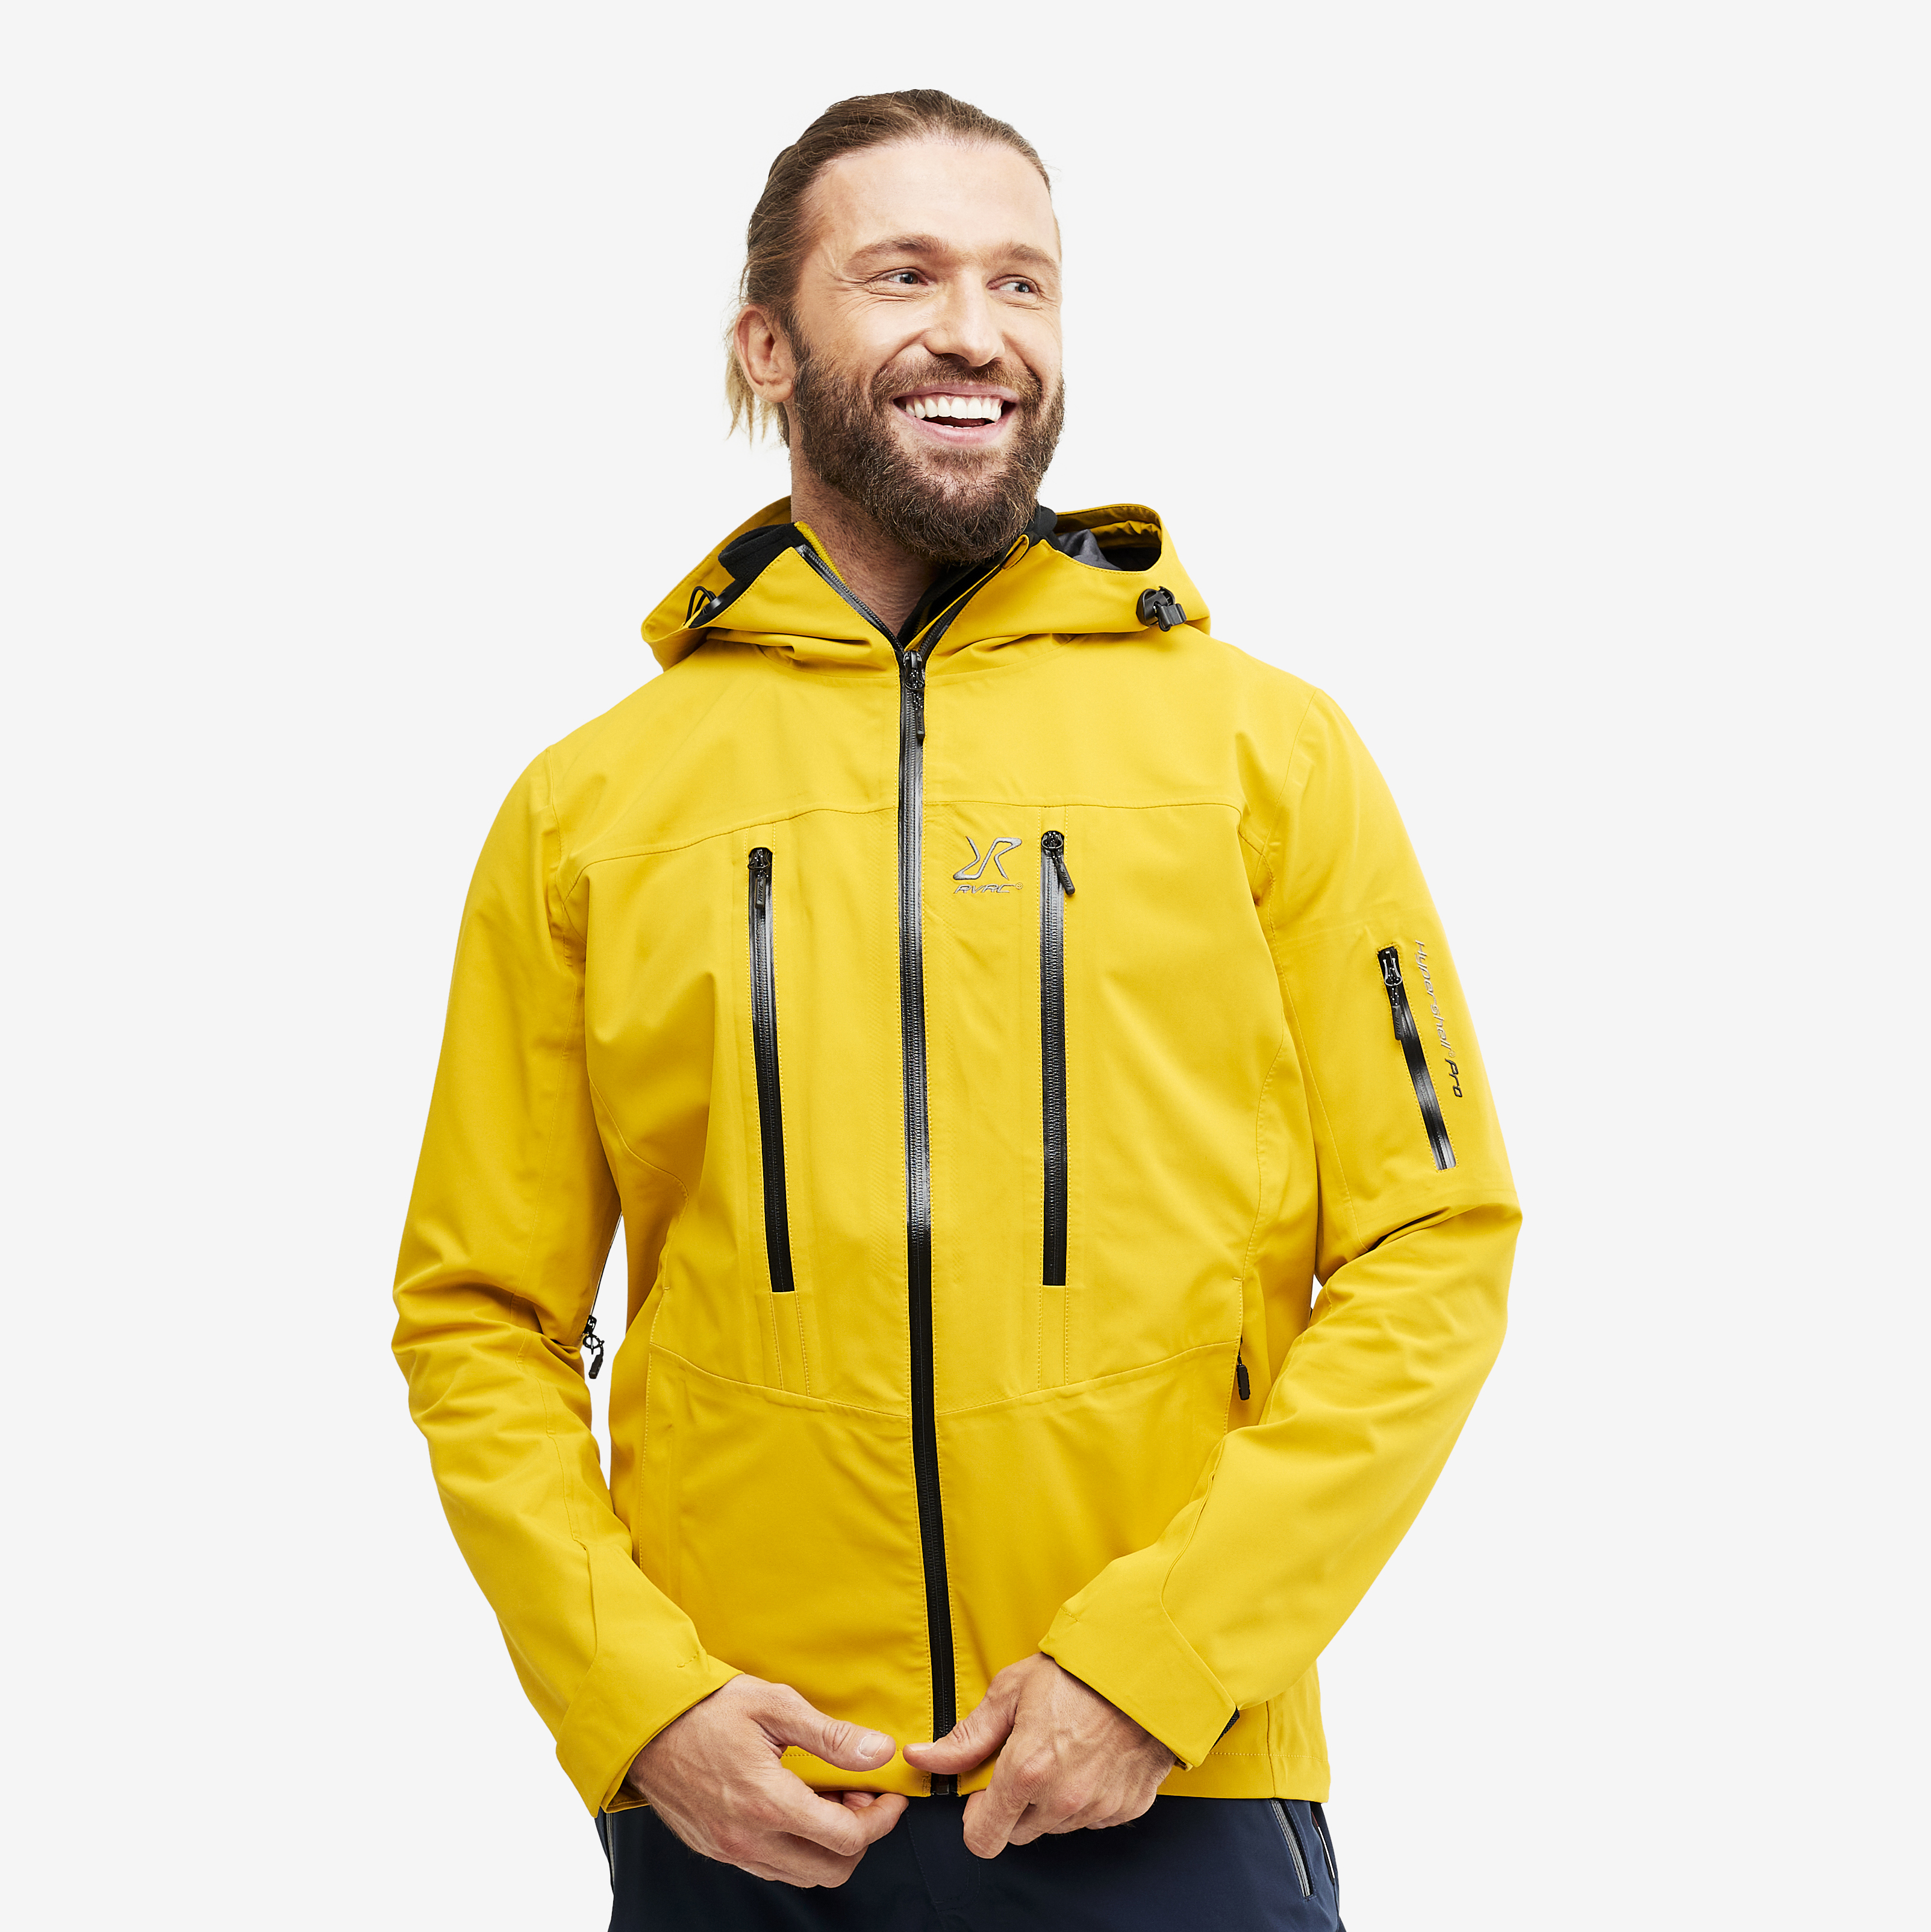 Whisper waterproof jacket for men in yellow